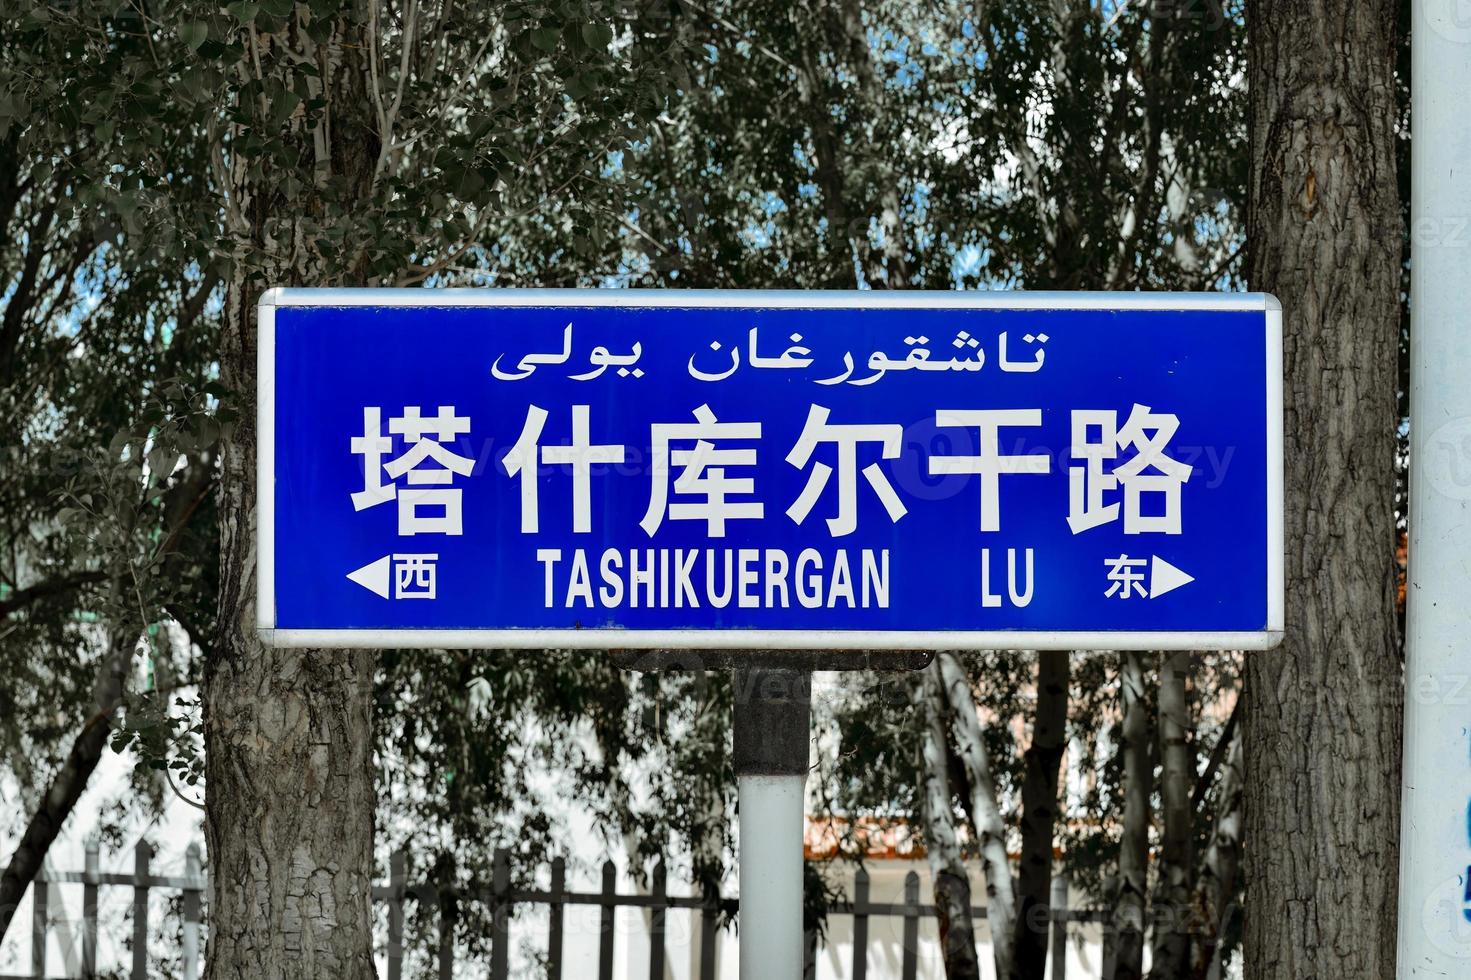 tashkurgan är de västligaste stad i Kina foto